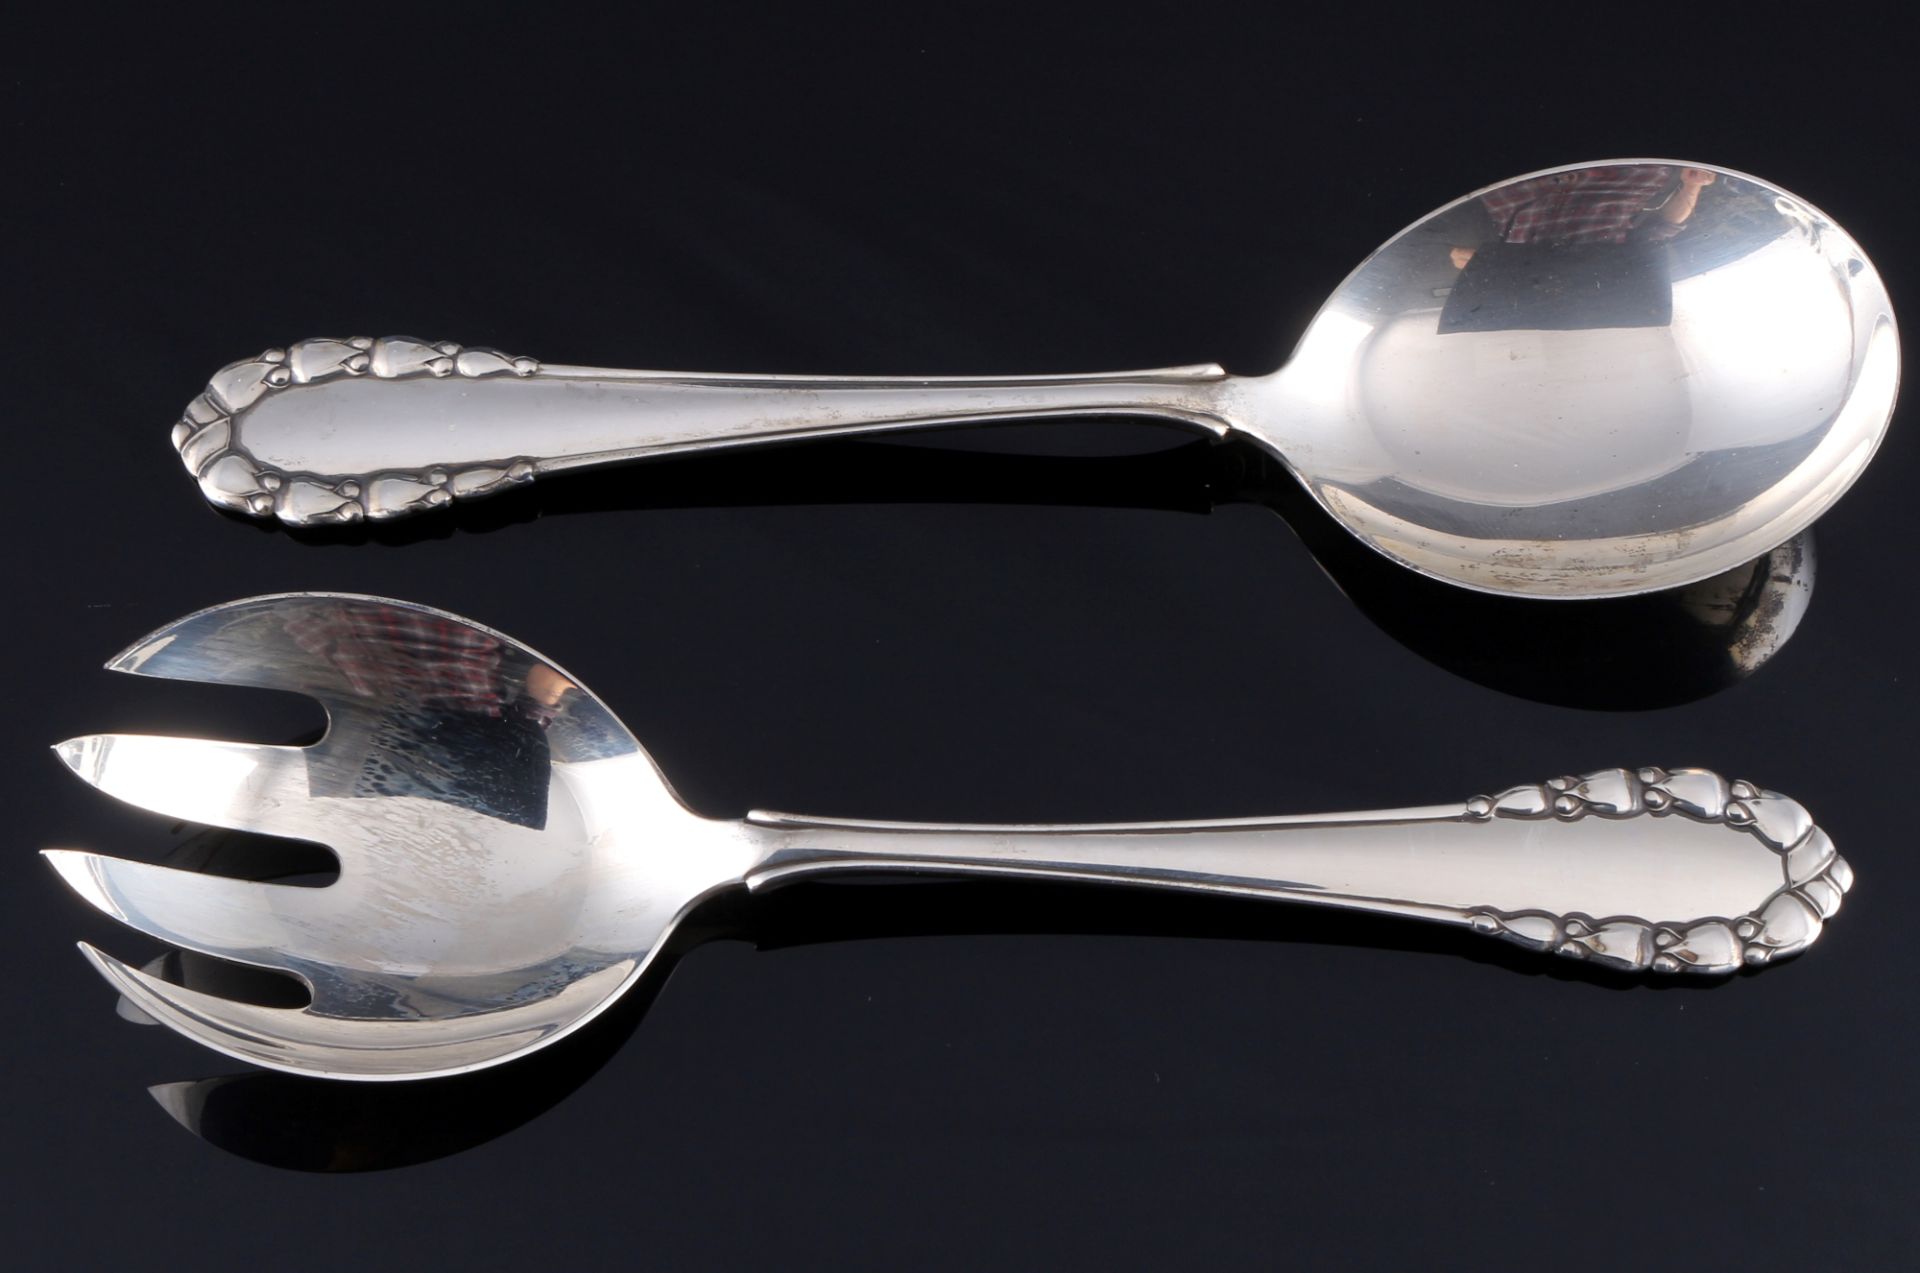 Georg Jensen Maiglöckchen 925 Silber 6-teiliges Vorlegebesteck, sterling silver serving cutlery, - Image 2 of 5